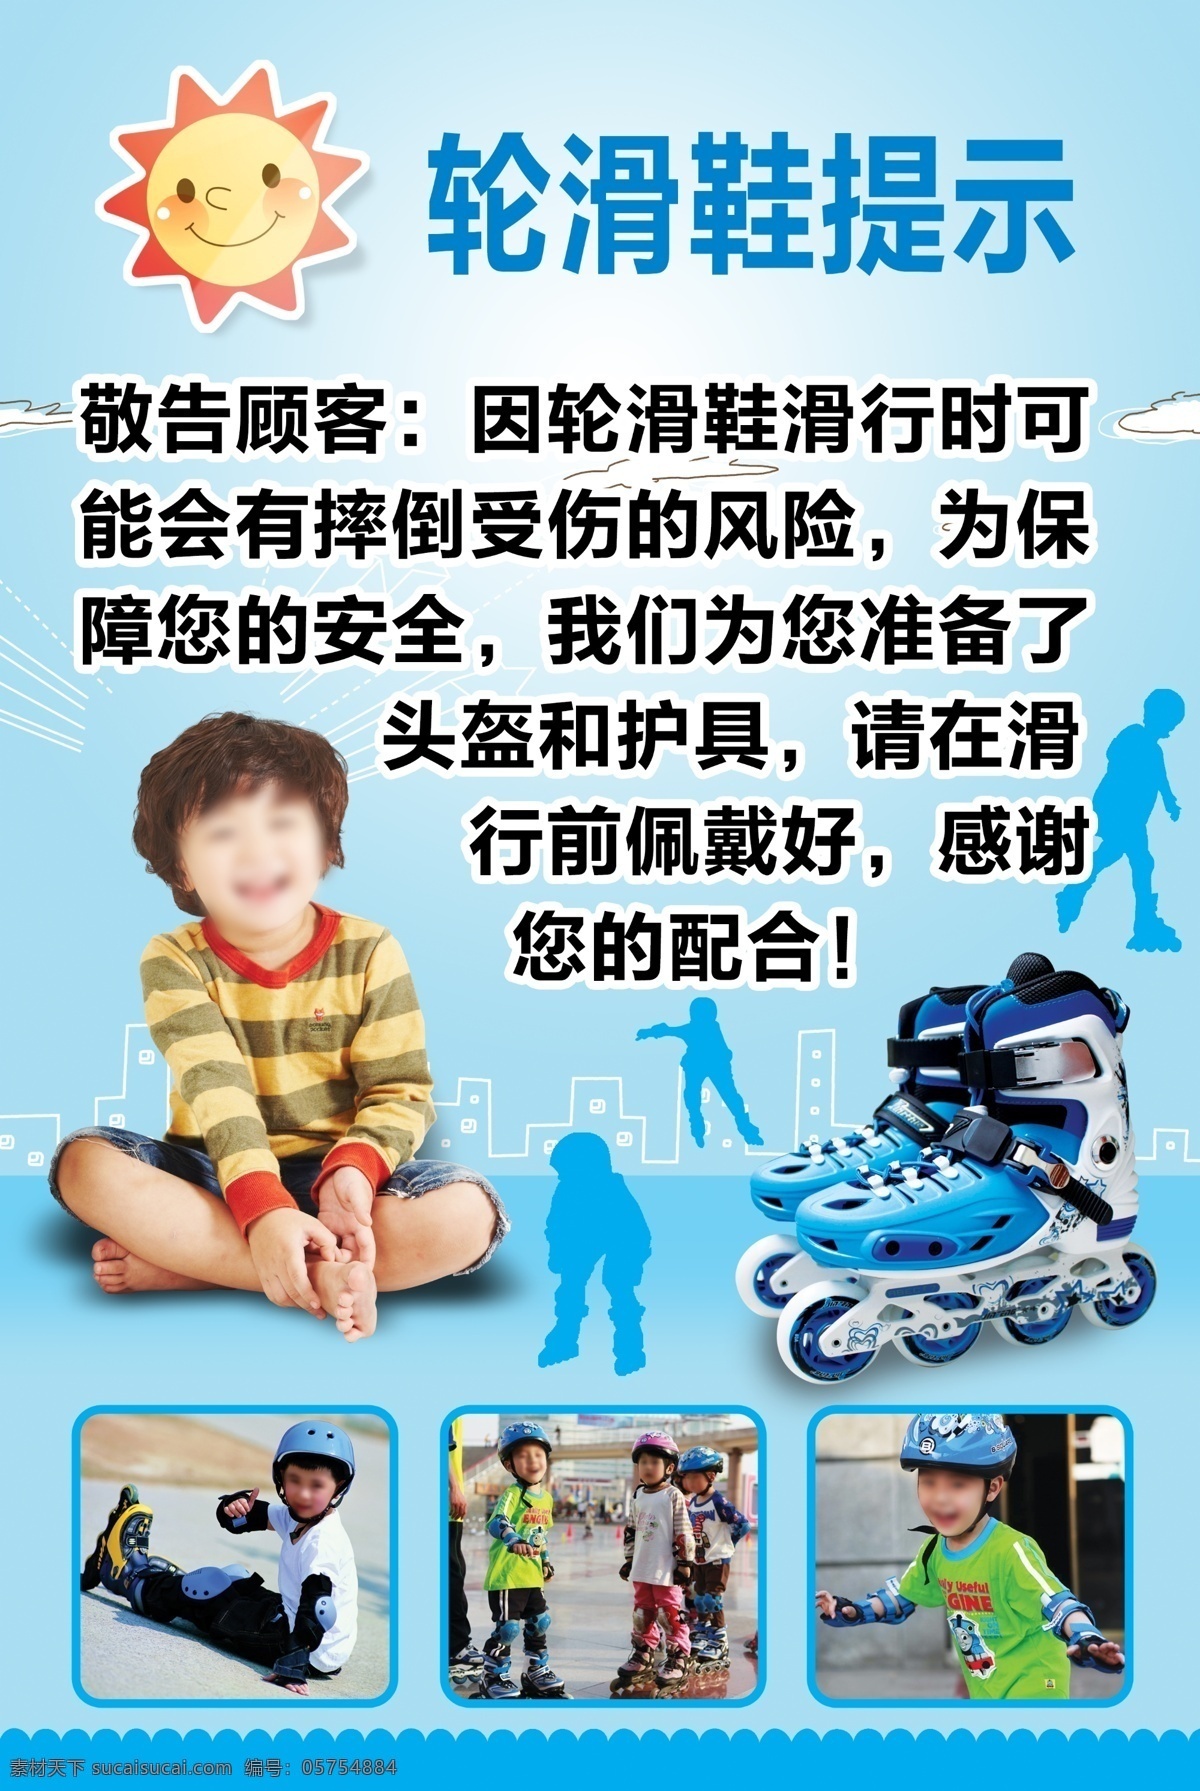 轮滑提示素材 儿童轮滑素材 轮滑鞋轮滑1 温馨提示轮滑 素材轮滑下载 生活百科 生活用品